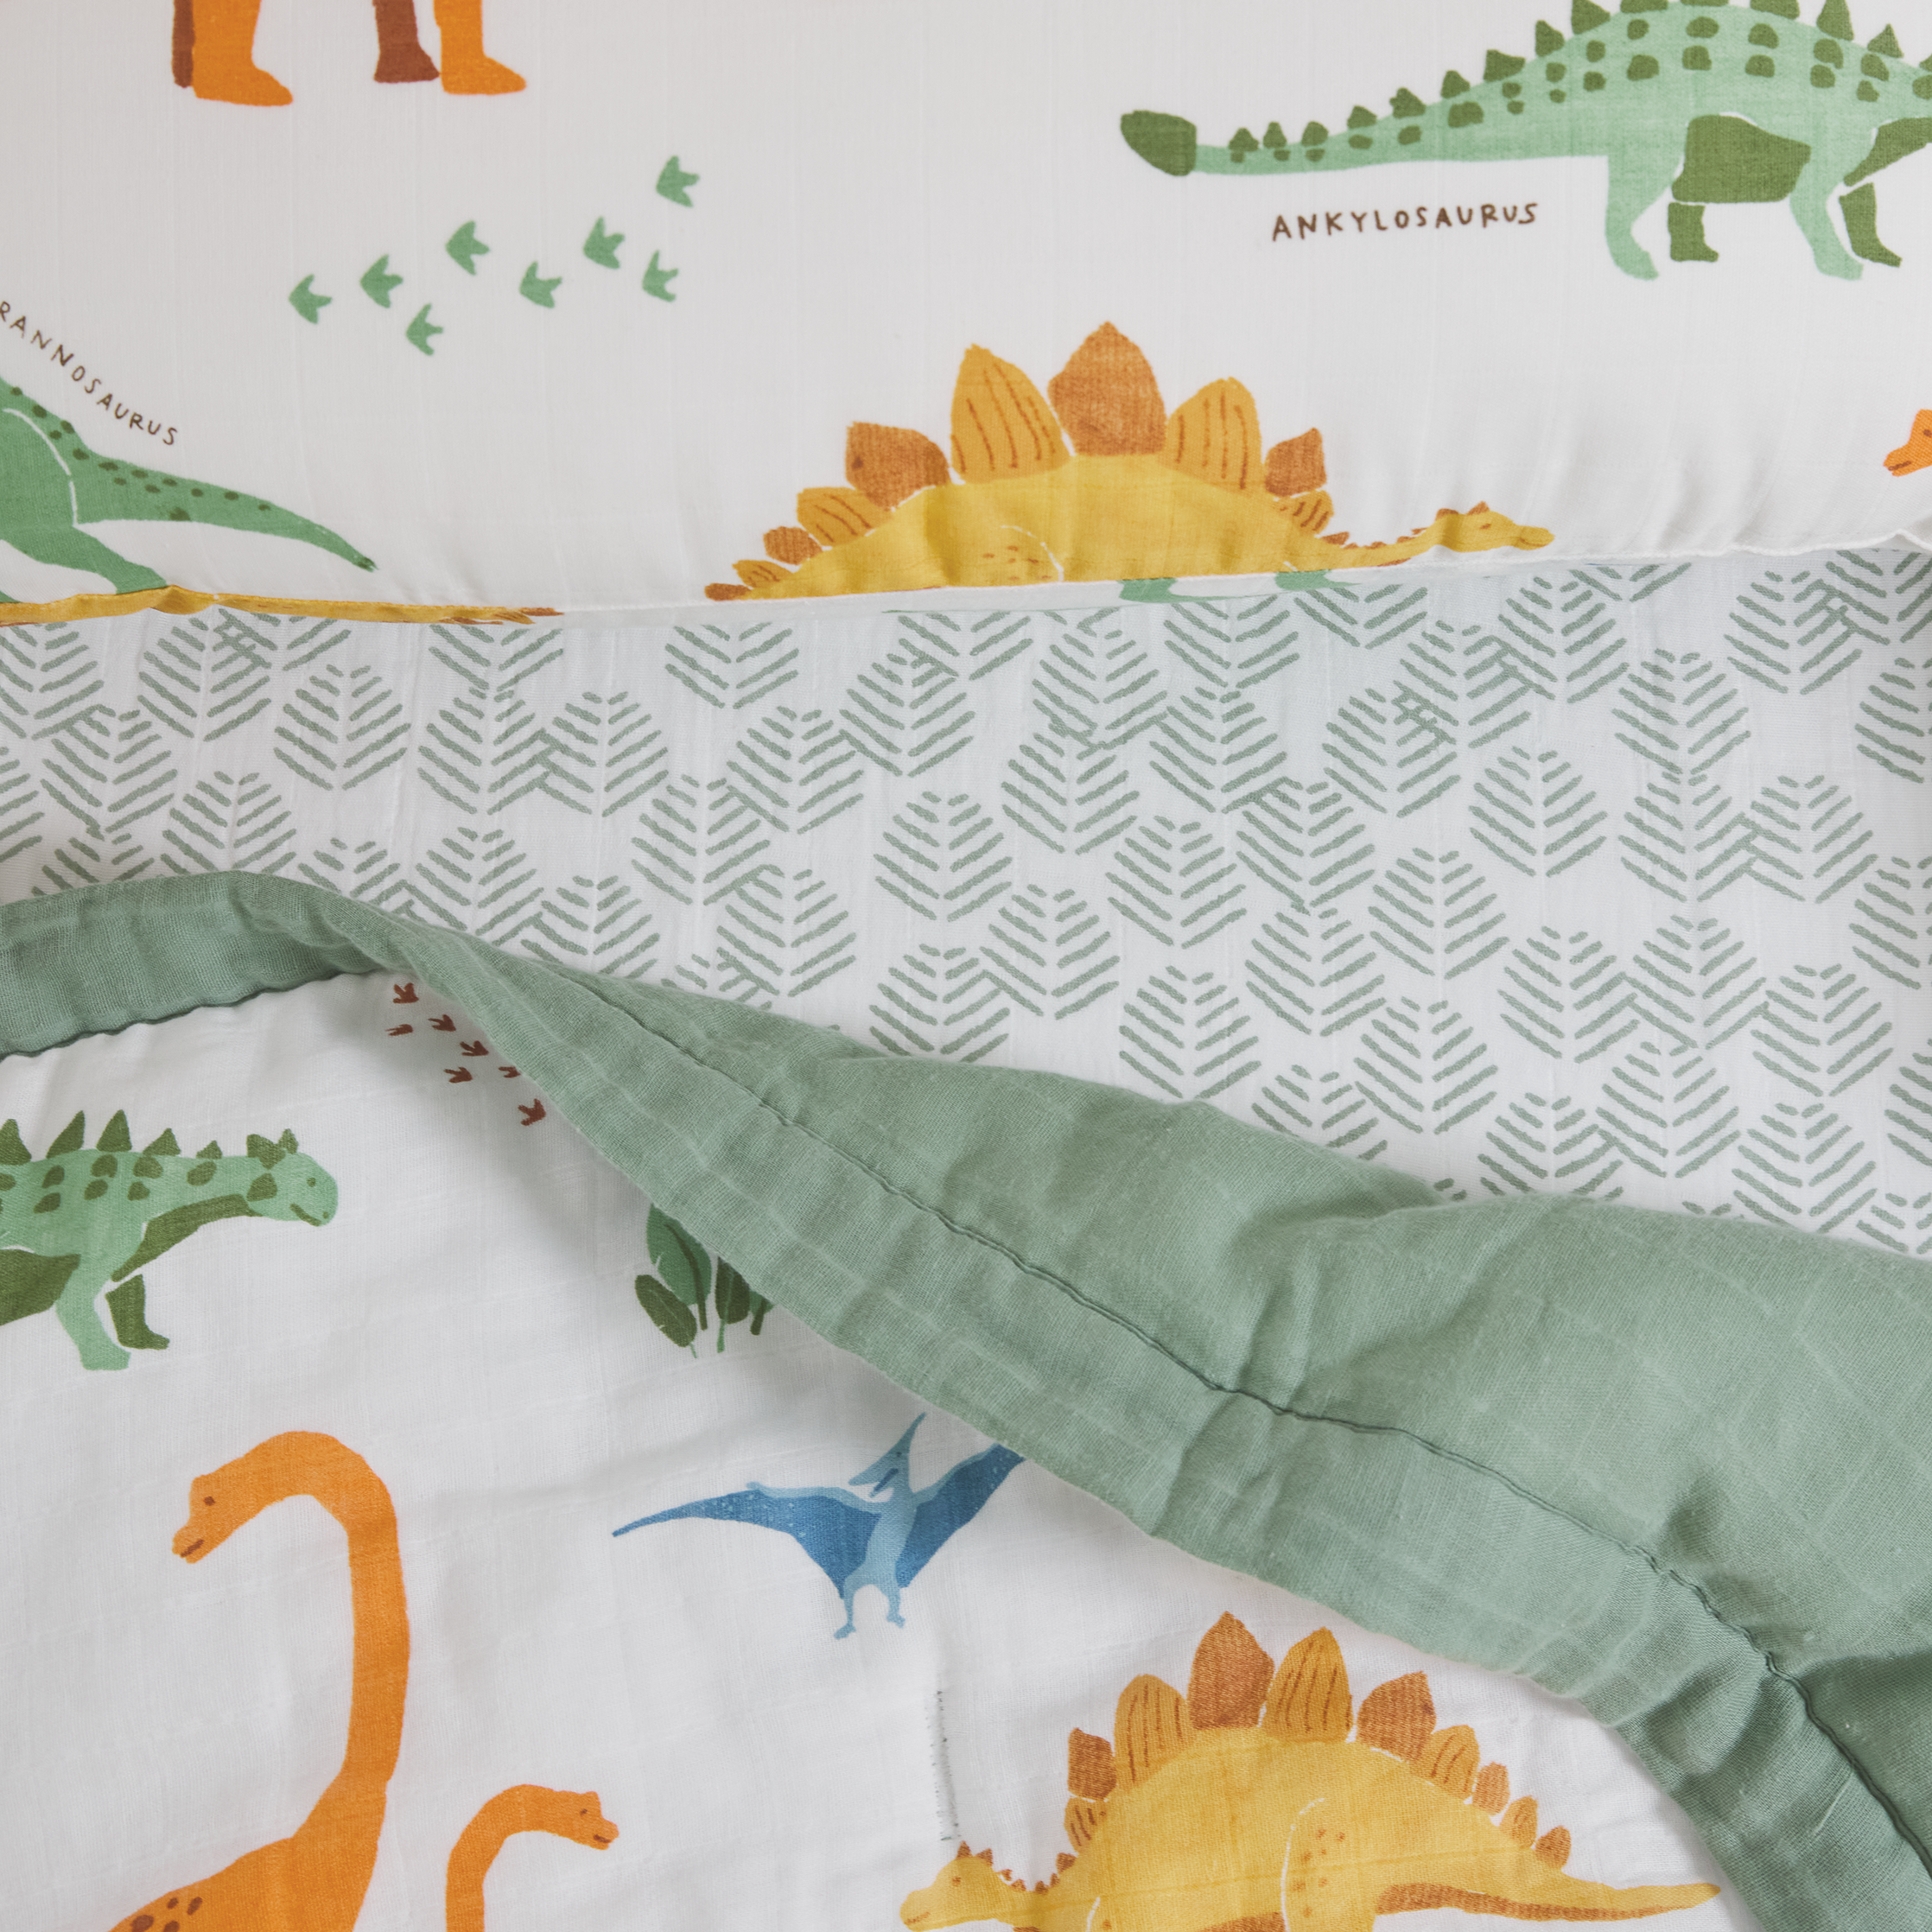 Cotton Muslin Toddler Bedding 3 Piece Set - Dino Names